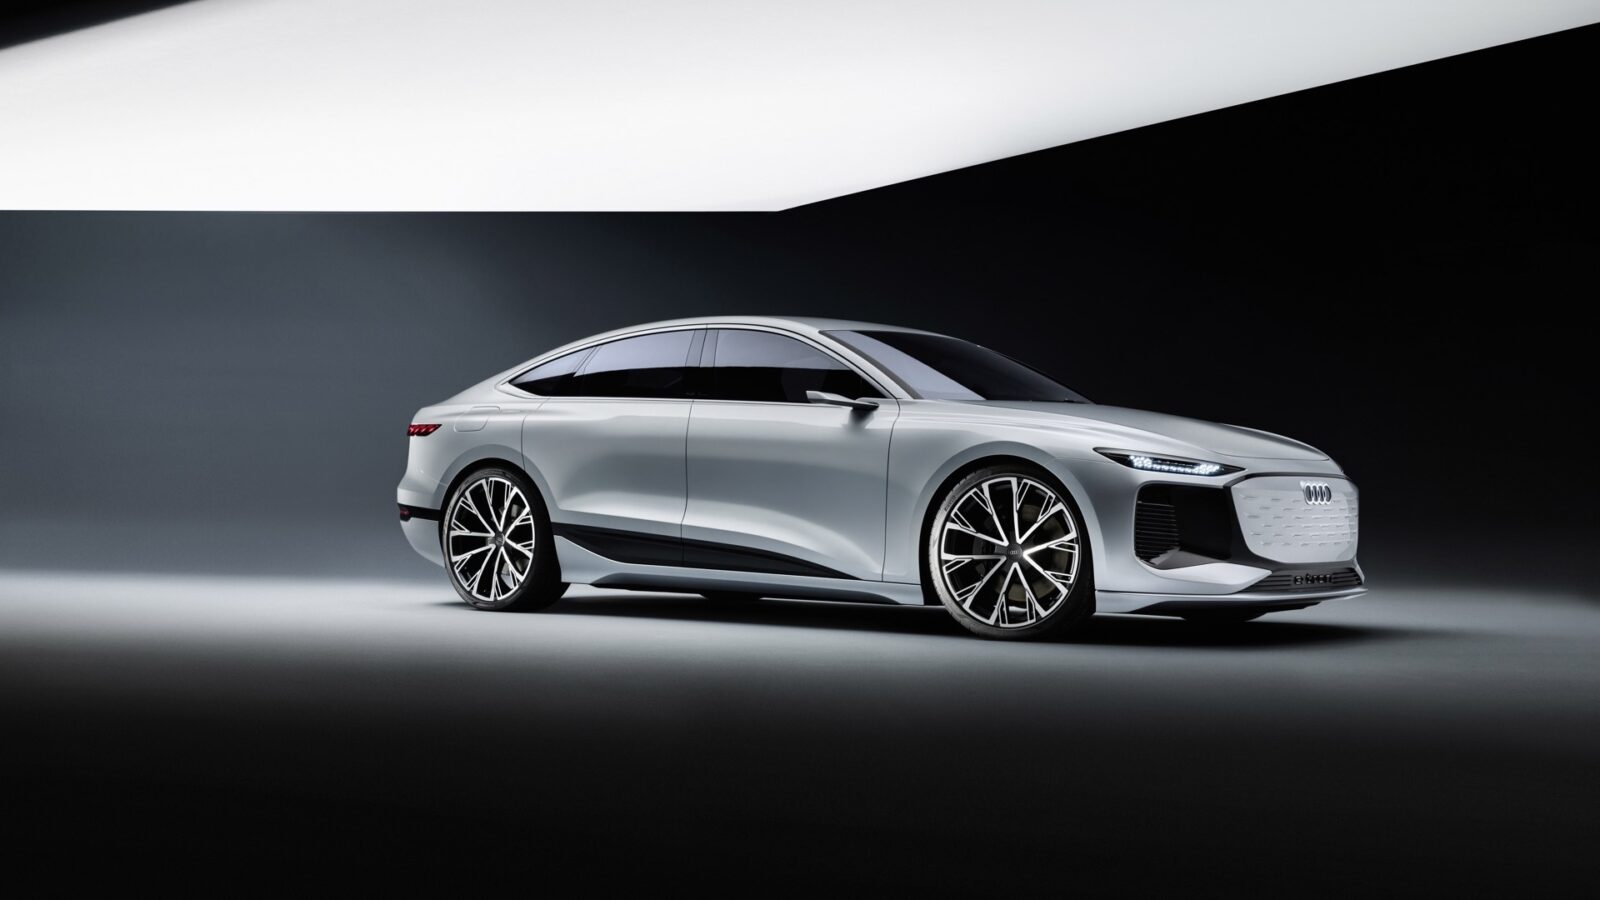 Audi announces A6 E-Tron concept electric vehicle